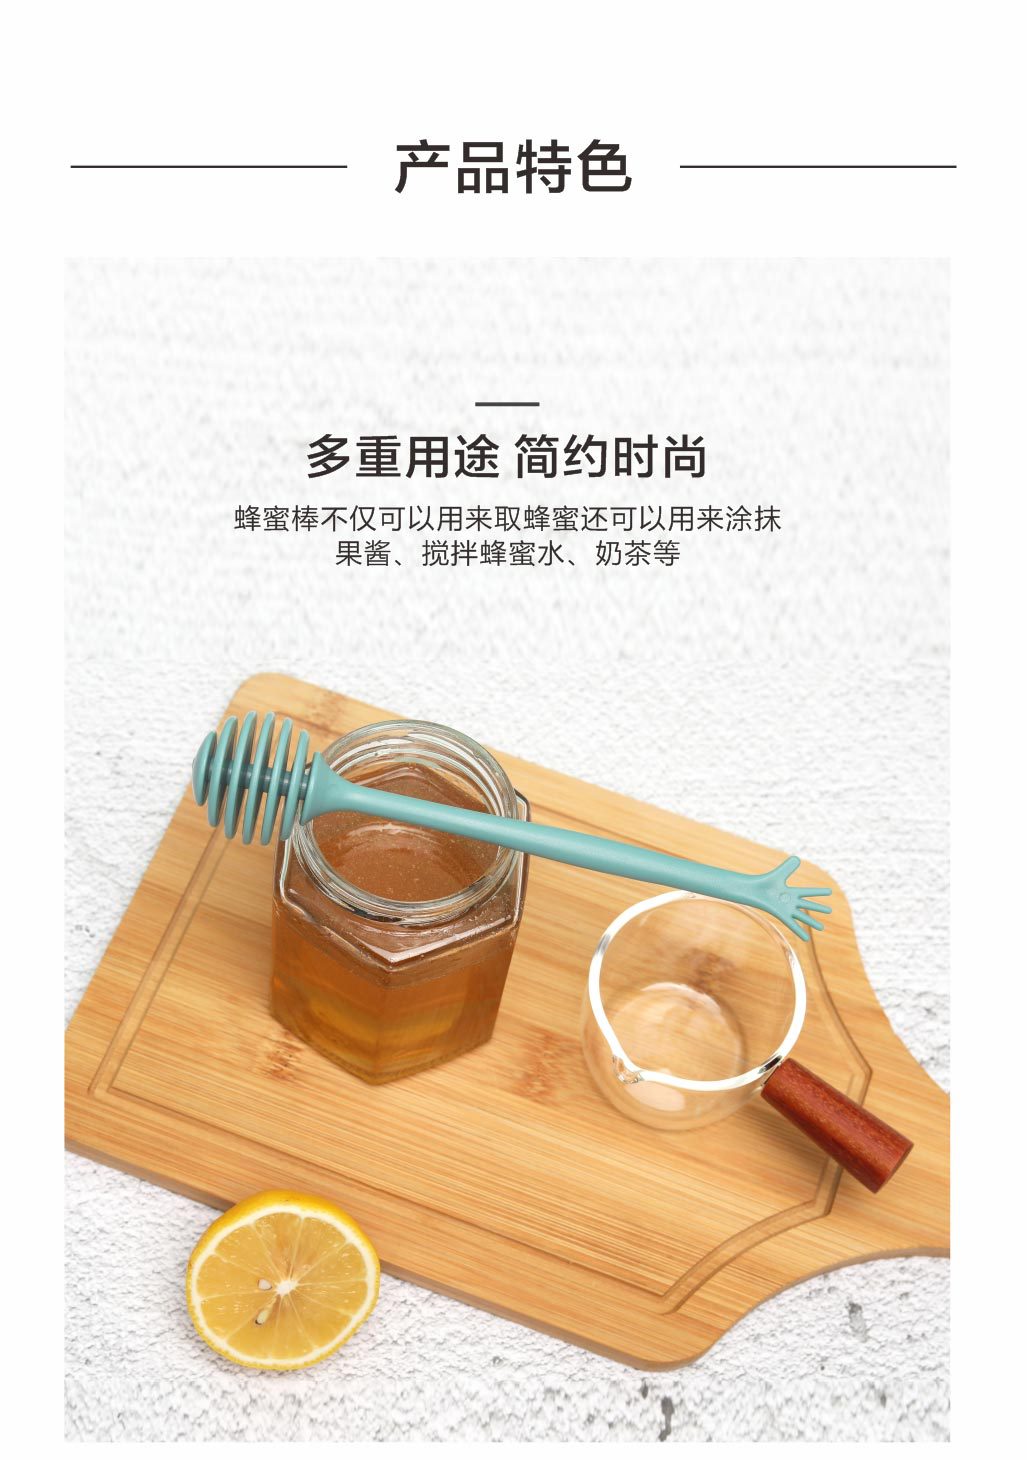 創意長柄蜂蜜攪拌棒 北歐色蜂蜜攪拌器 手掌造型長柄攪拌棒1